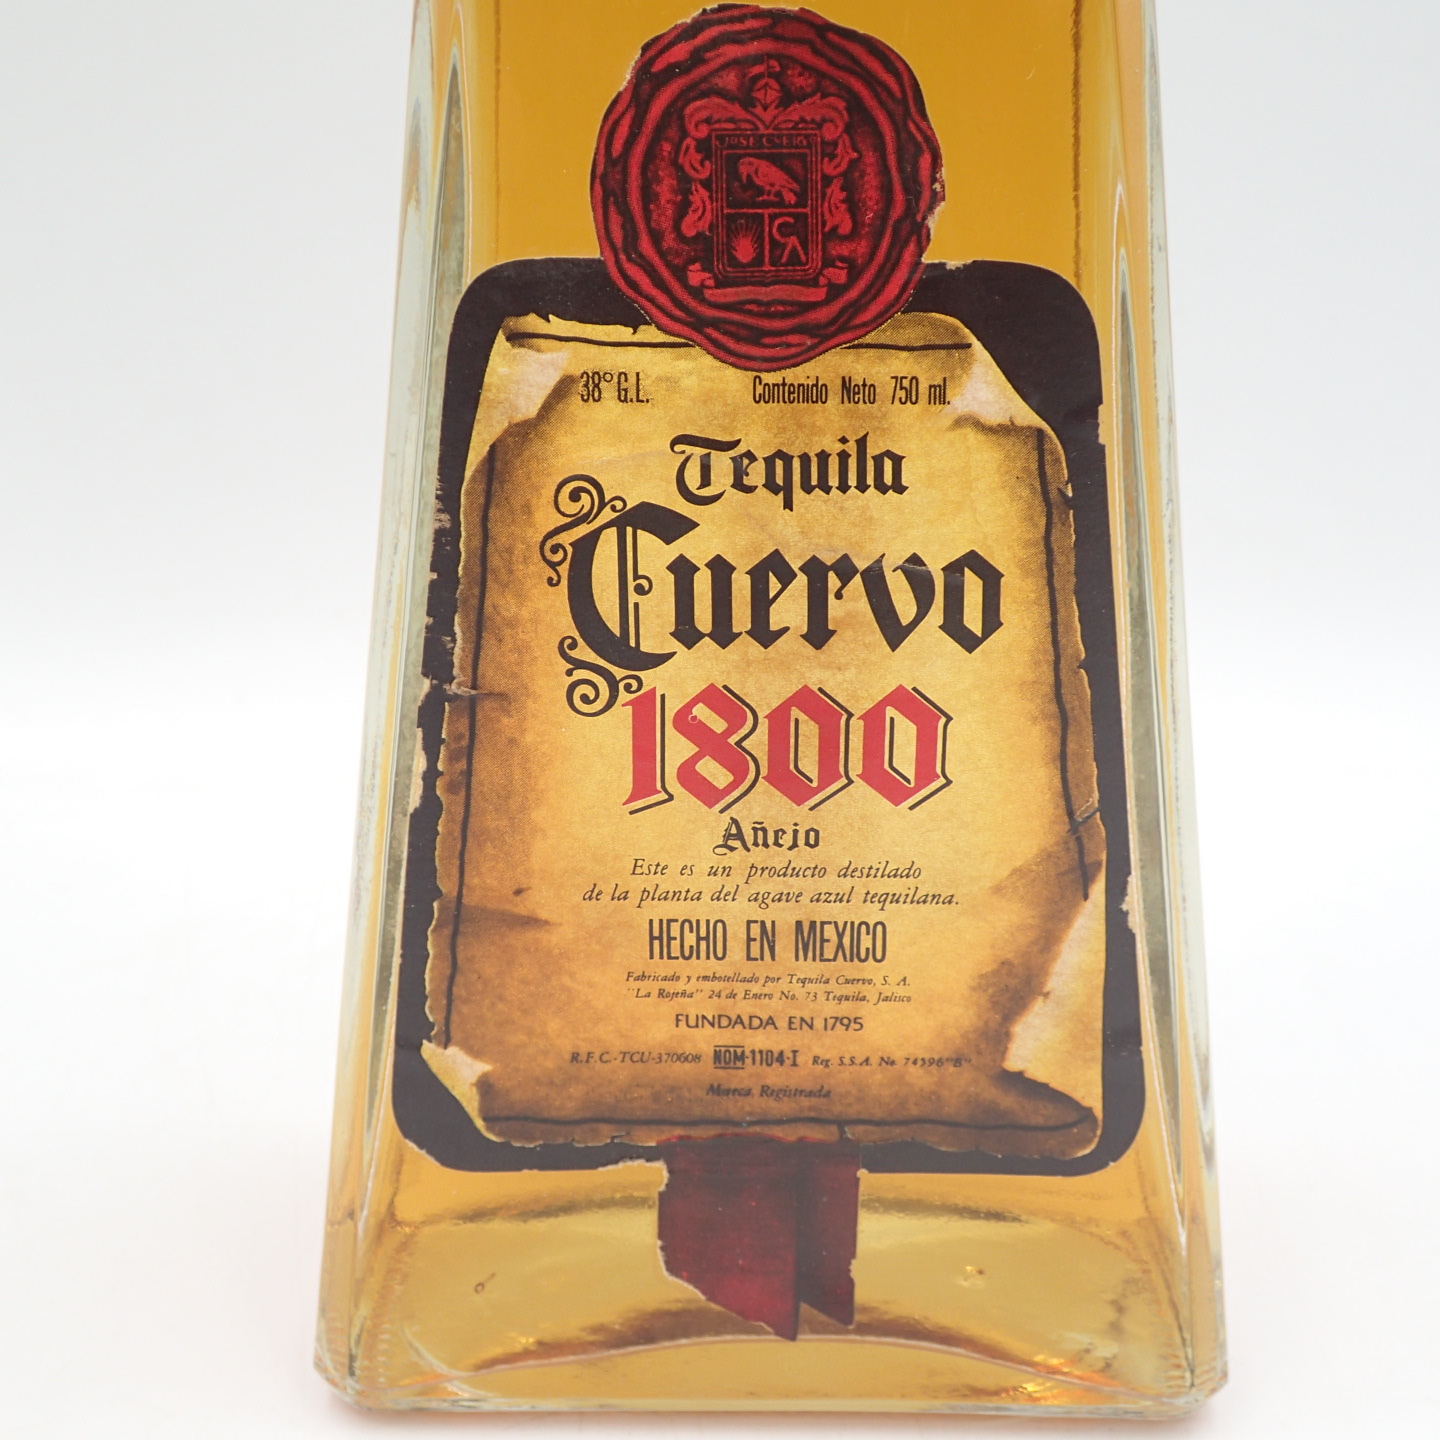 k elbow ane ho tequila 1800 old bottle 750ml 38% Cuervo Anejo[M]